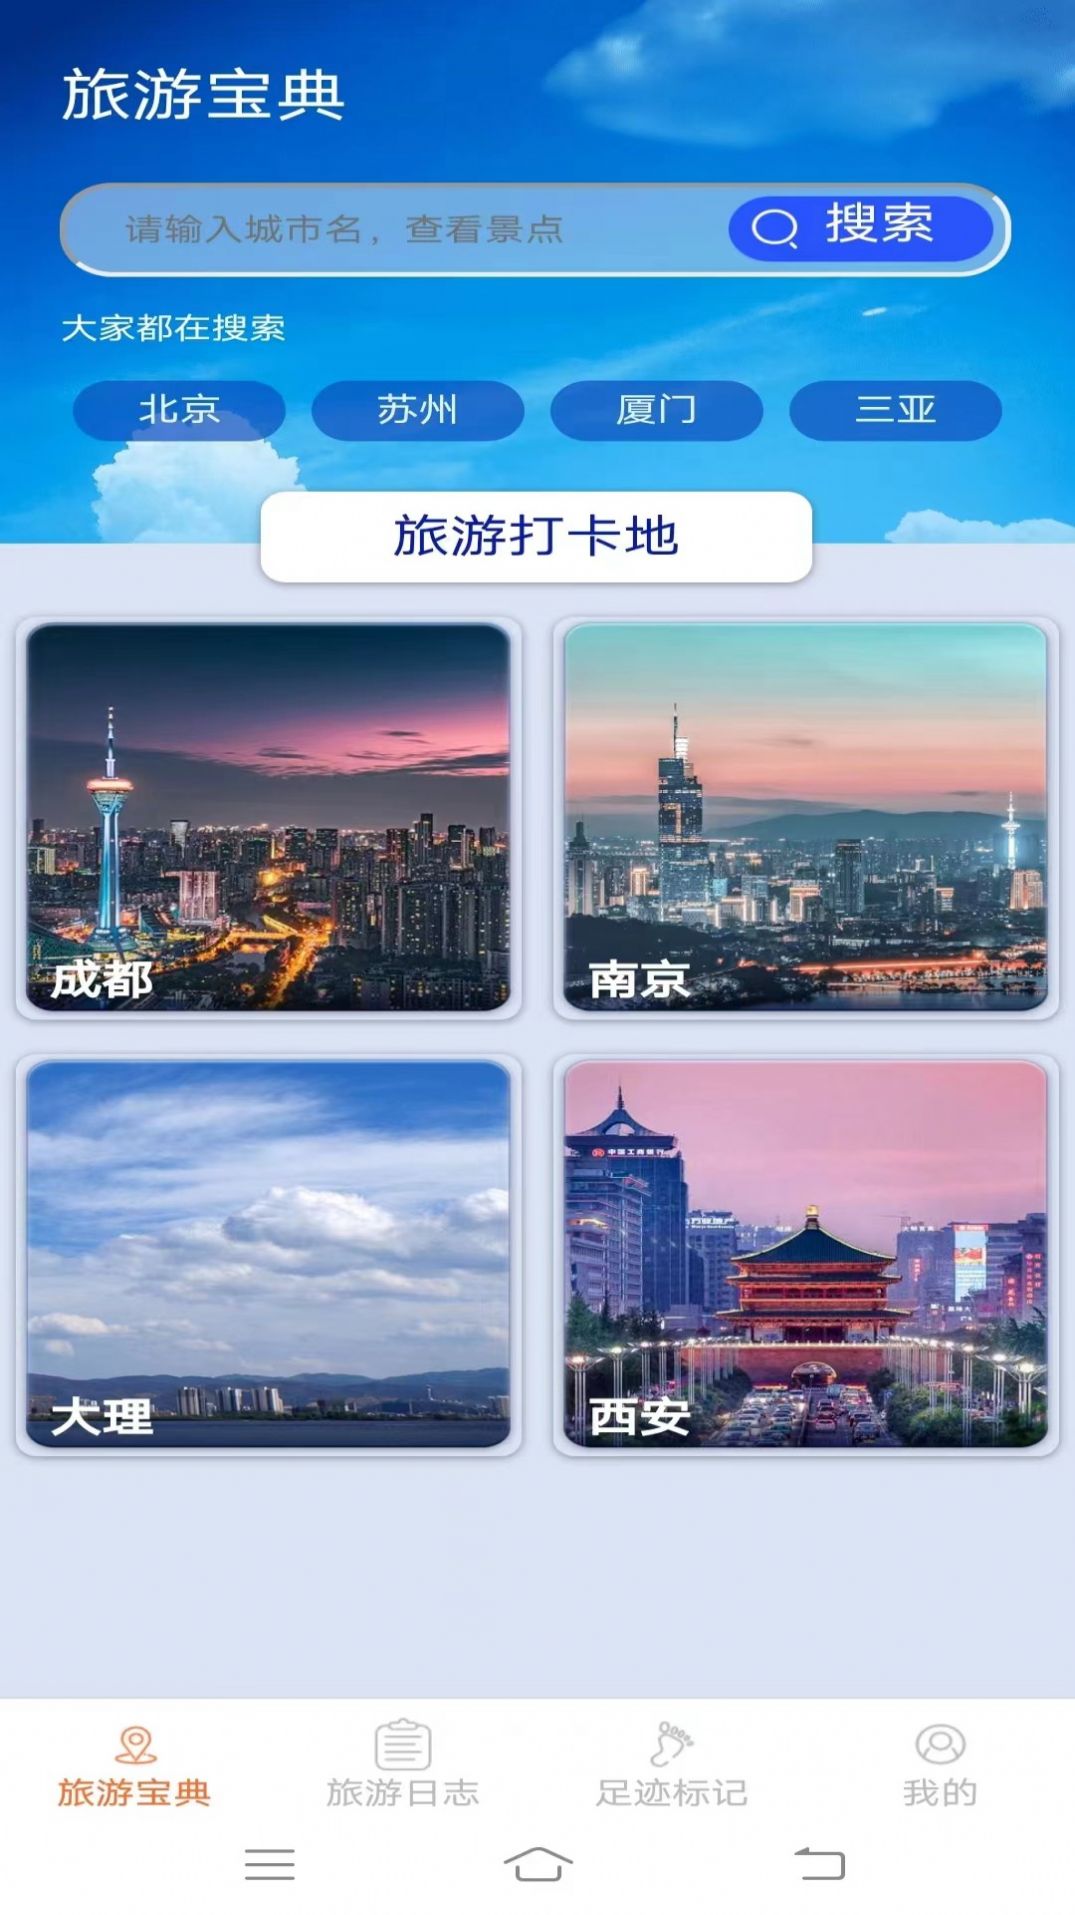 天天爱旅游app安卓版官方下载图片5